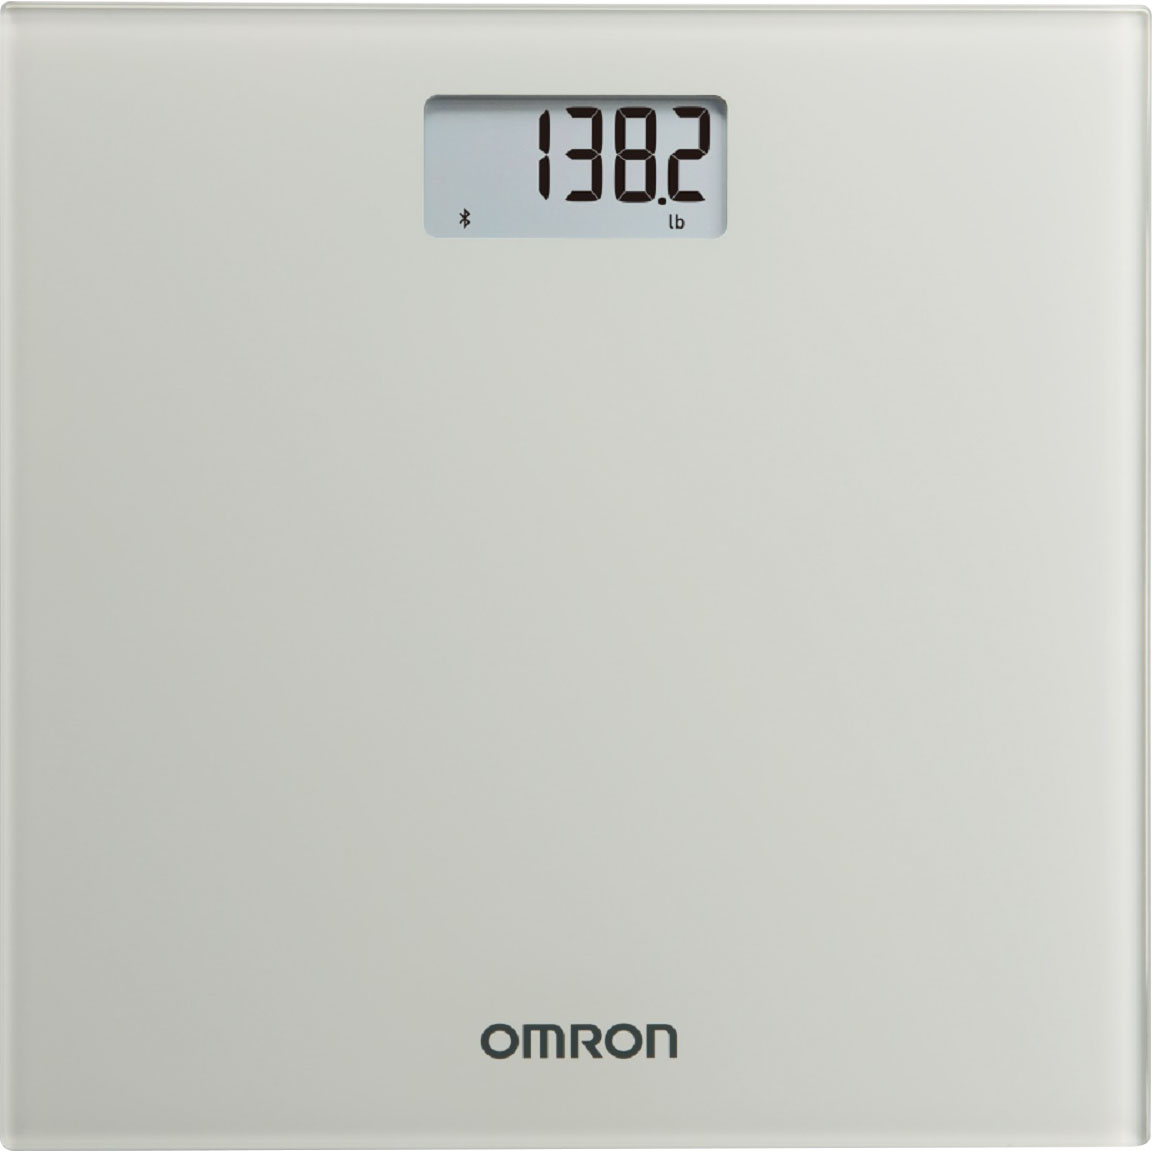 OMRON BF508 Digital Scale